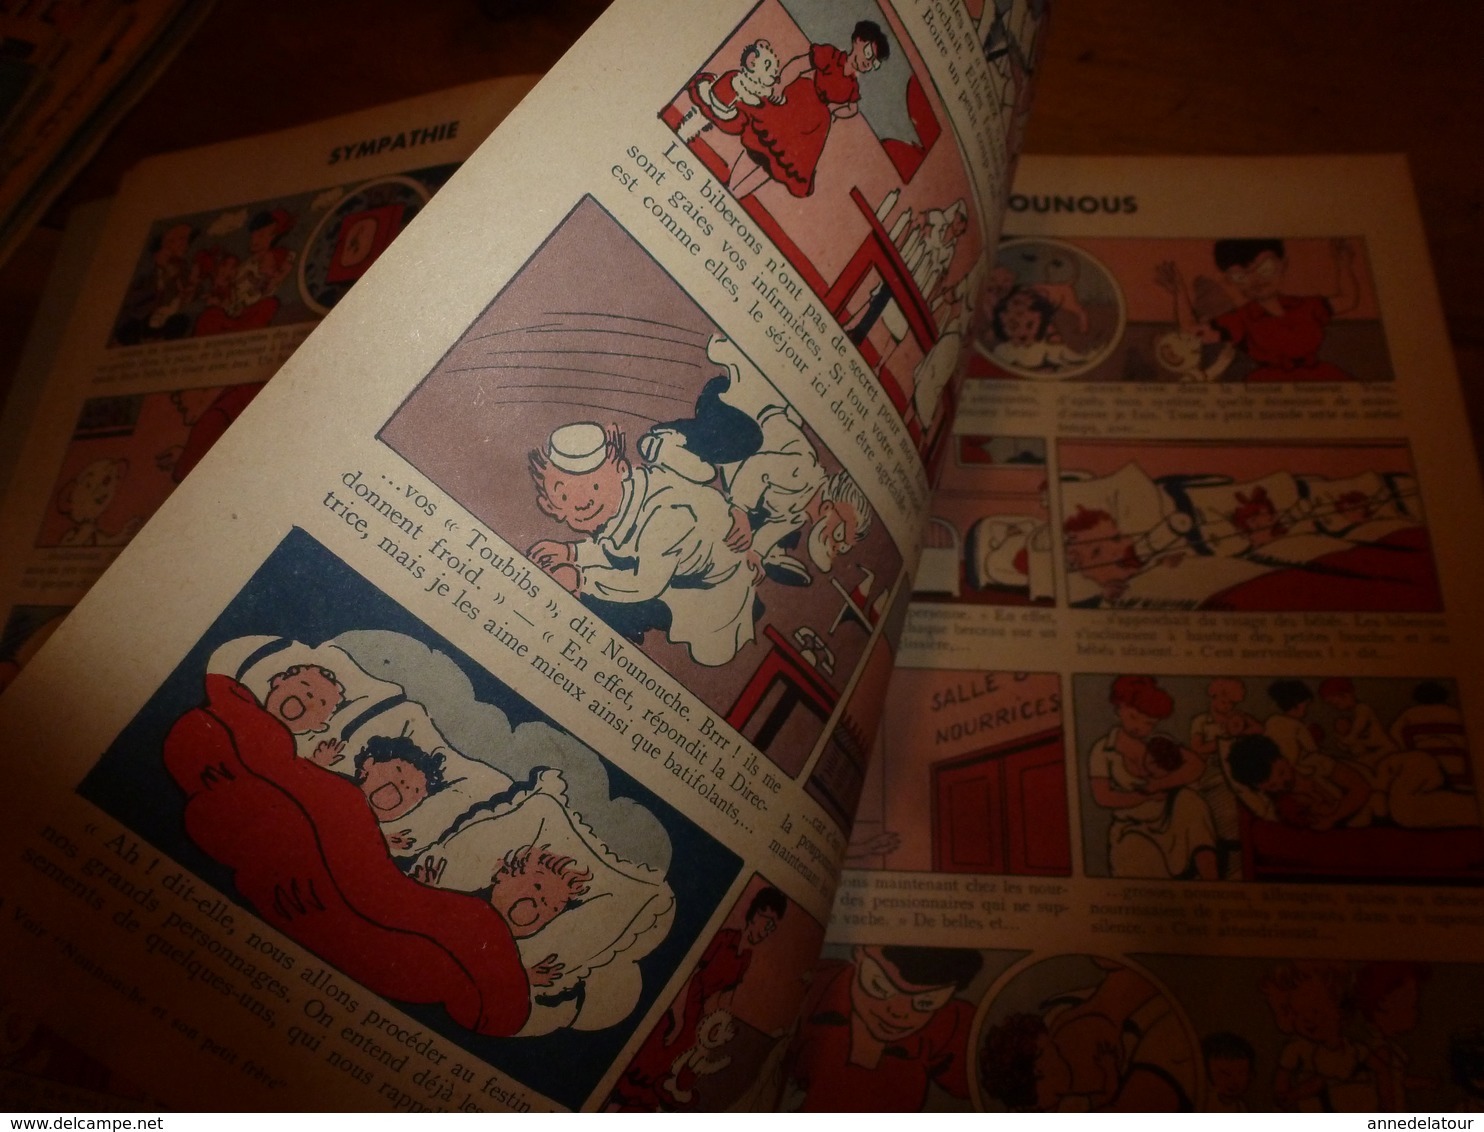 1954 NOUNOUCHE  à la pouponnière,   texte et dessins de DURST